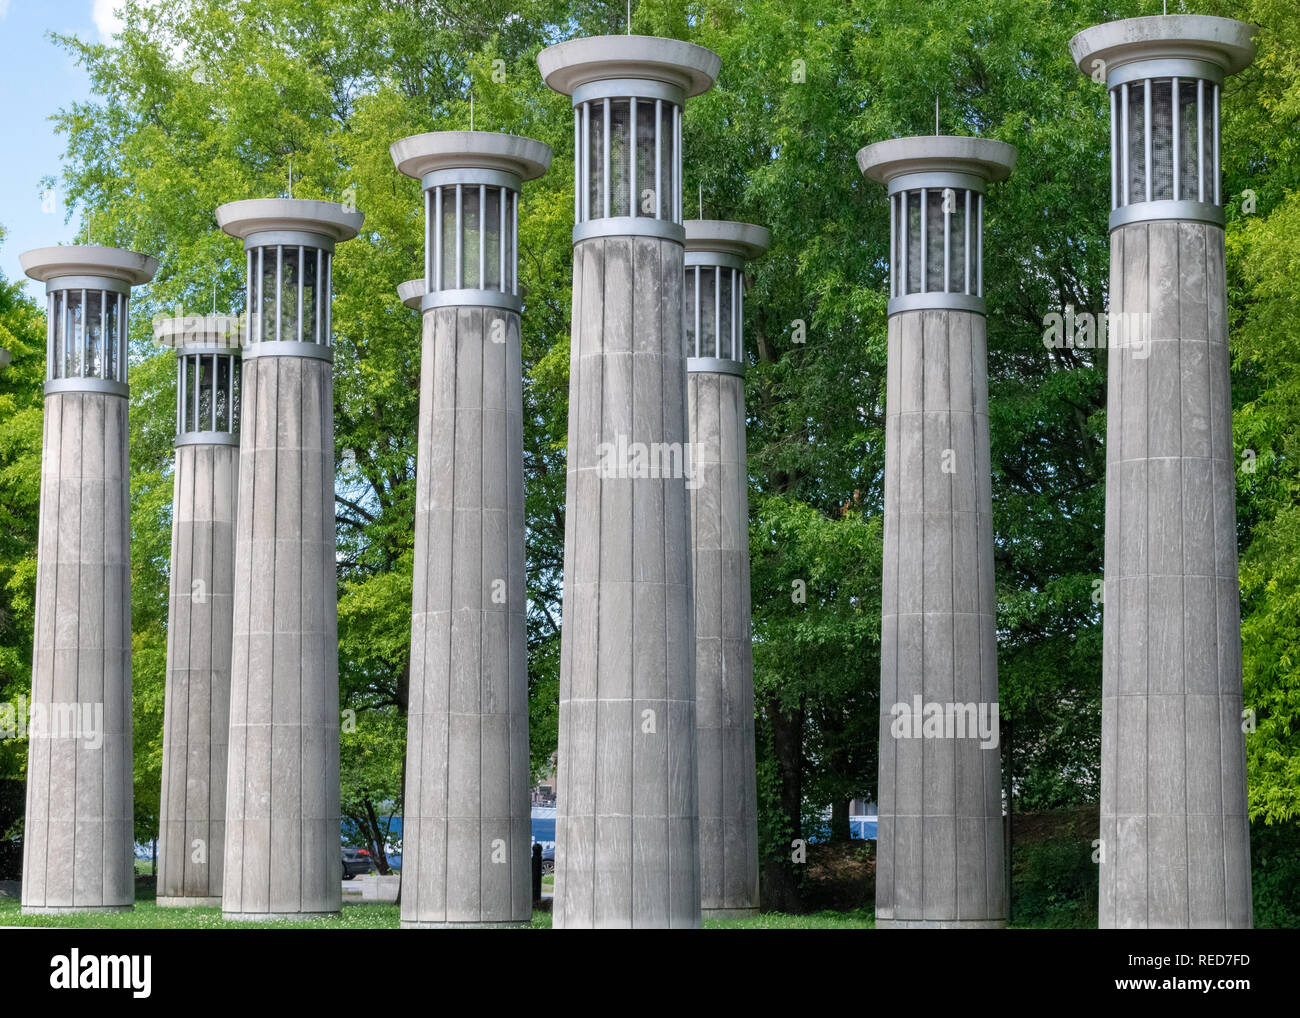 Les 95 cloches du carillon, situé à Nashville dans le Bicentennial Capitol Mall State Park, à Nashville, Tennessee. Banque D'Images